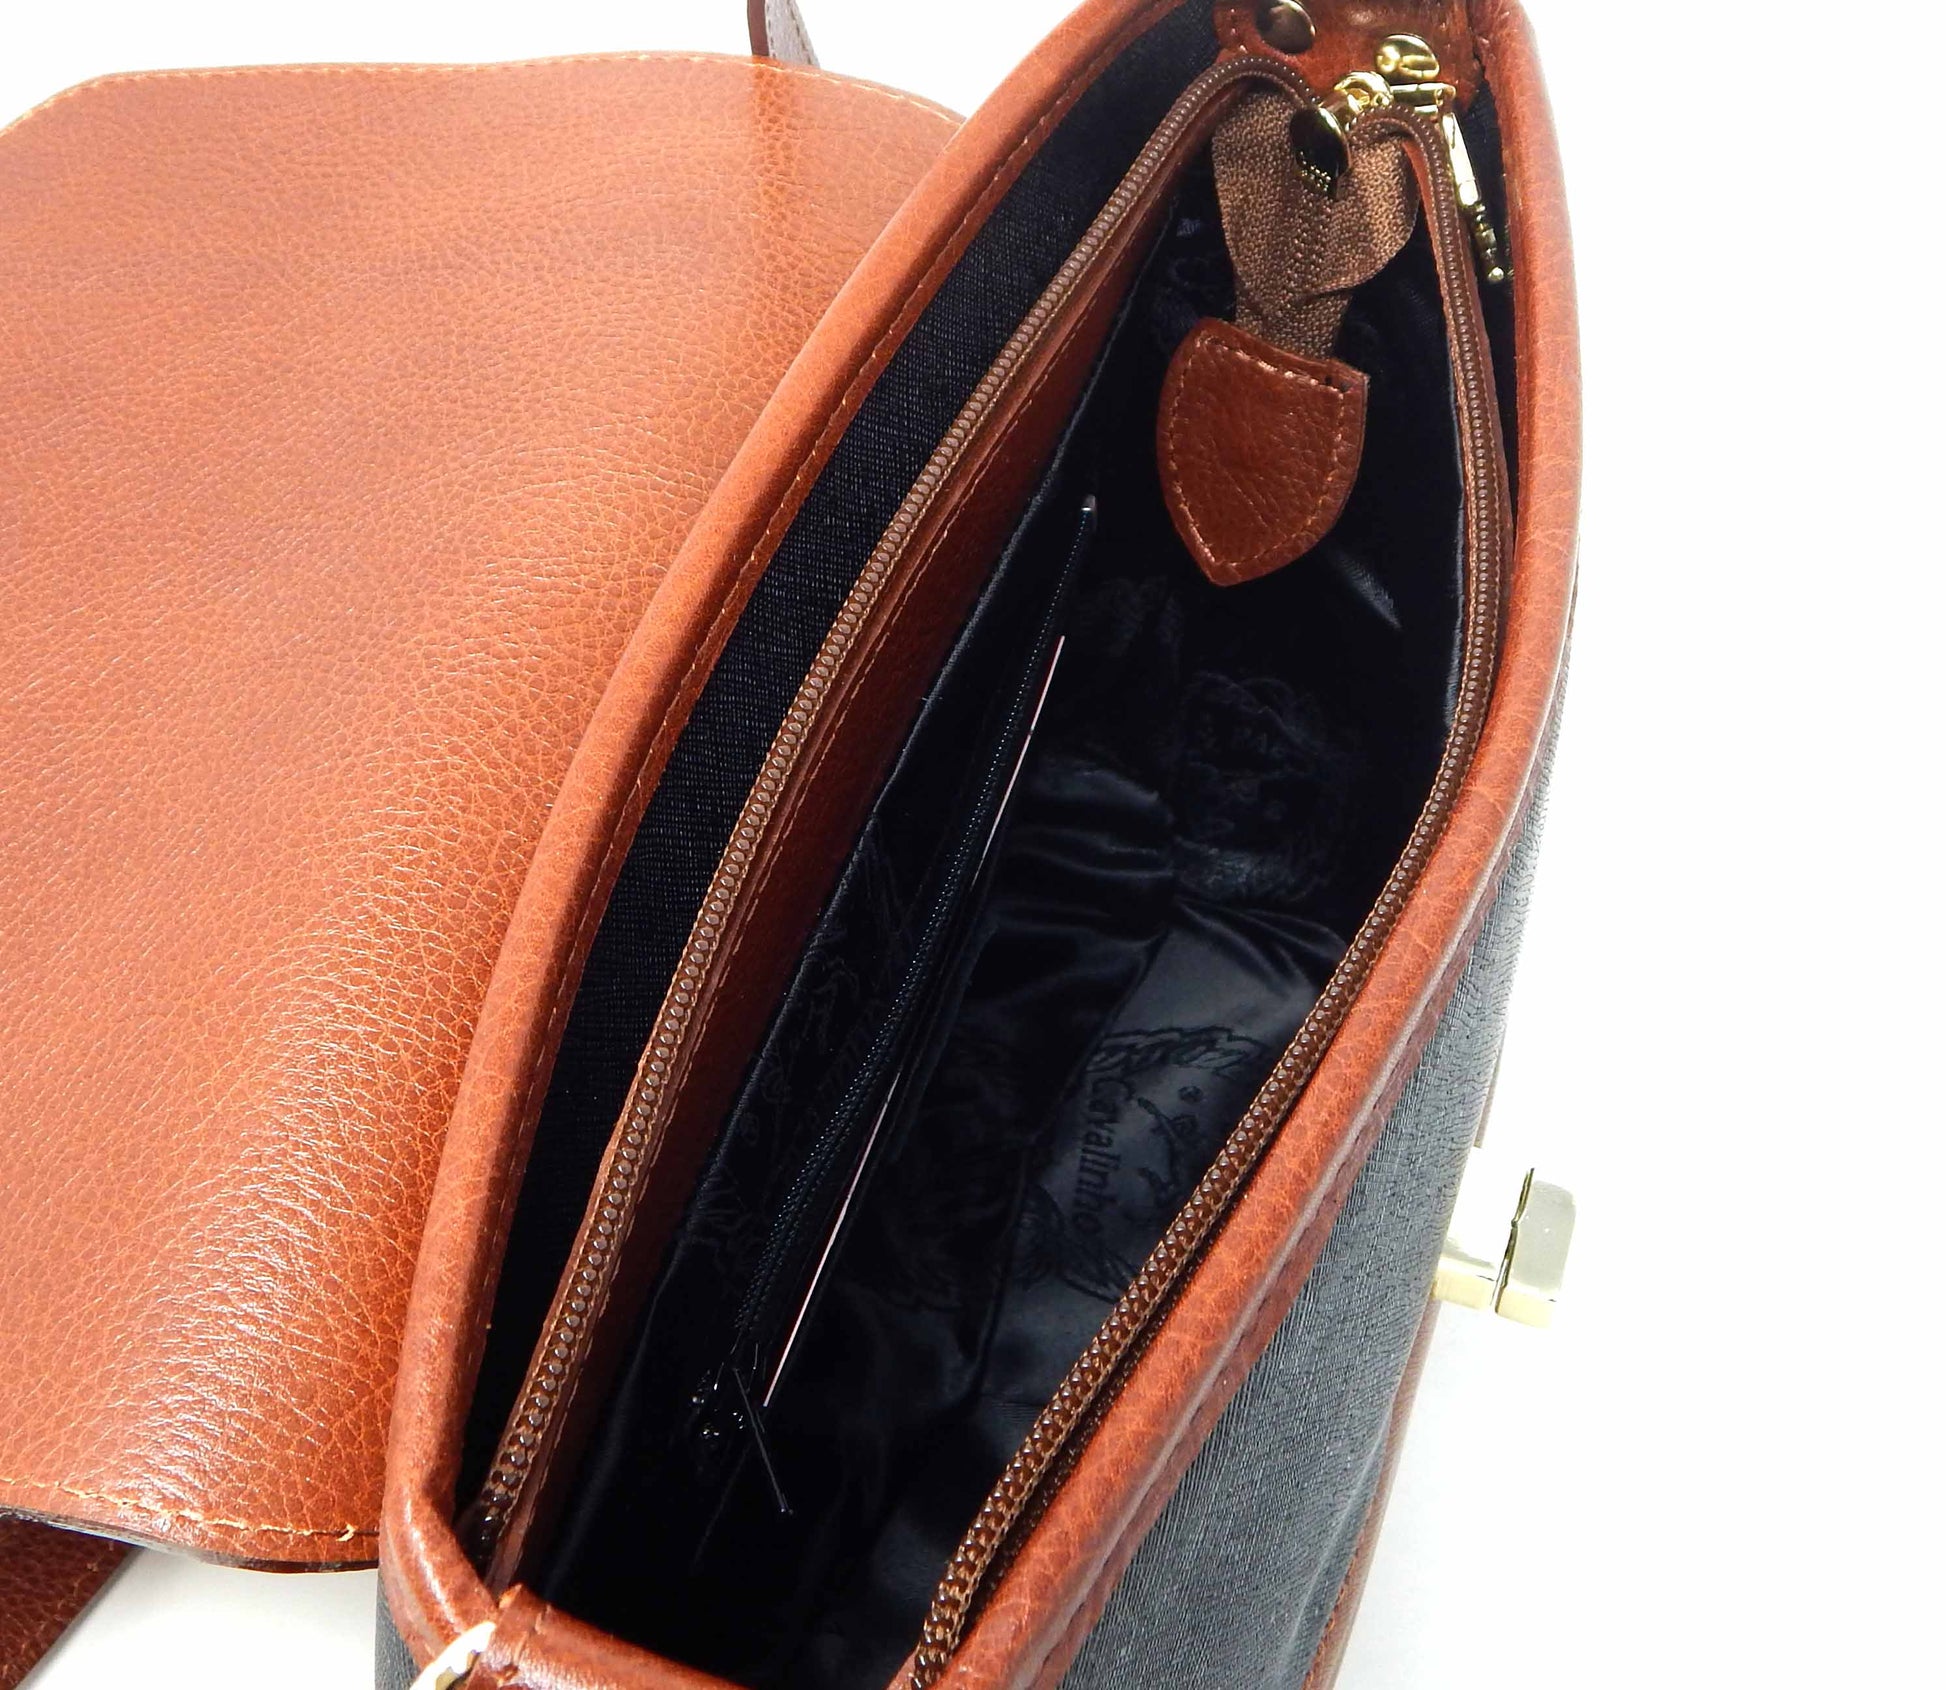 Cavalinho Unique Crossbody Bag - Black & Honey - inside_0406